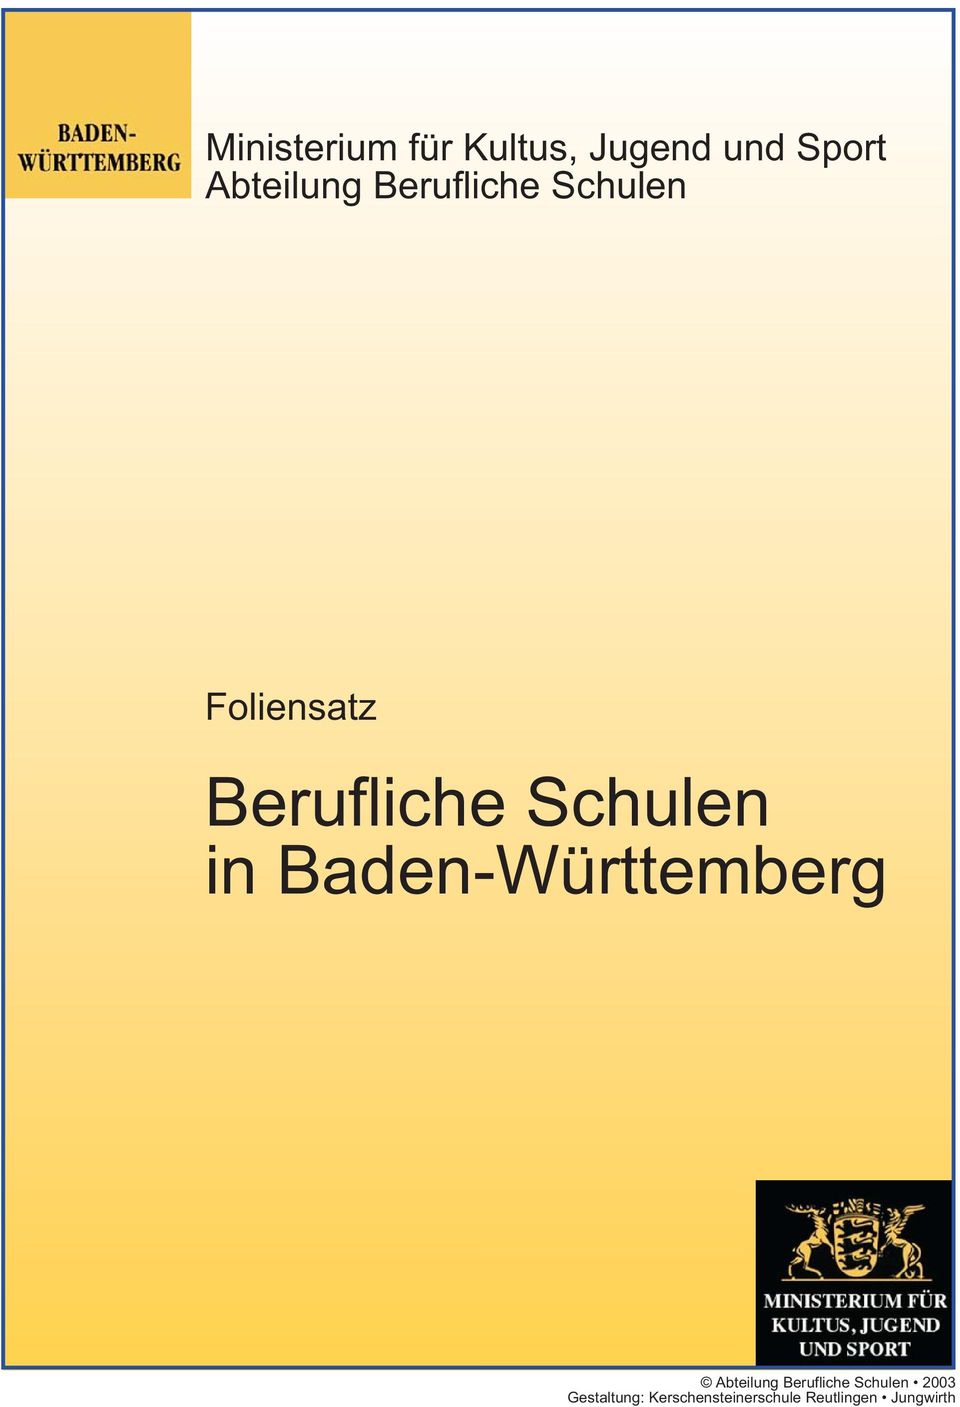 Baden-Württemberg Abteilung Berufliche Schulen 2003